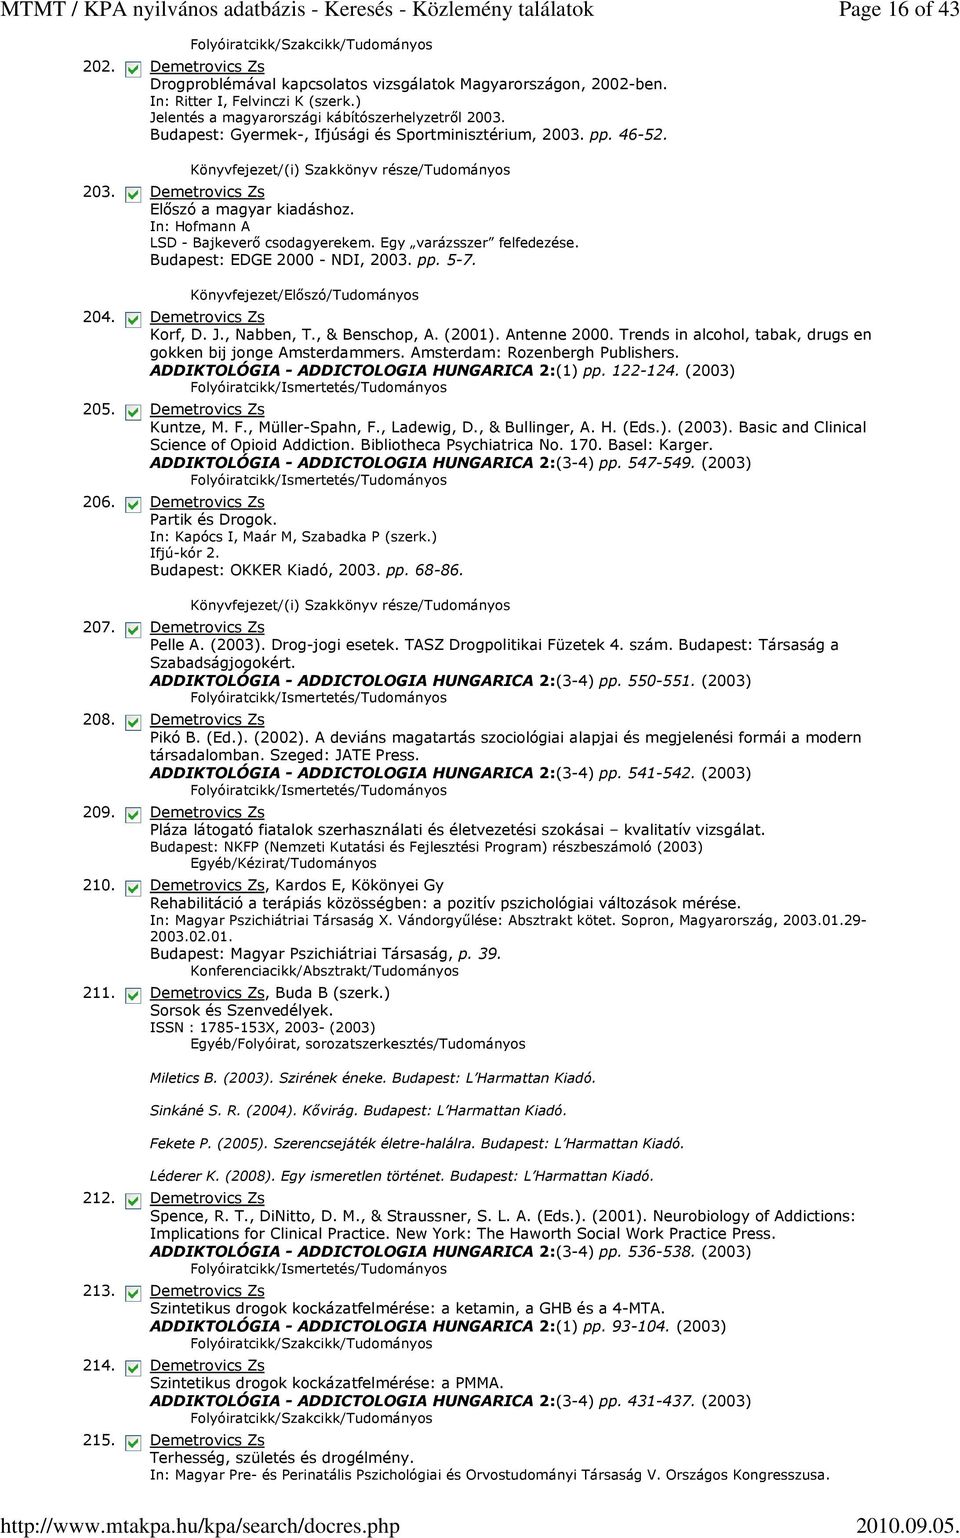 Egy varázsszer felfedezése. Budapest: EDGE 2000 - NDI, 2003. pp. 5-7. Könyvfejezet/Előszó/Tudományos Korf, D. J., Nabben, T., & Benschop, A. (2001). Antenne 2000.